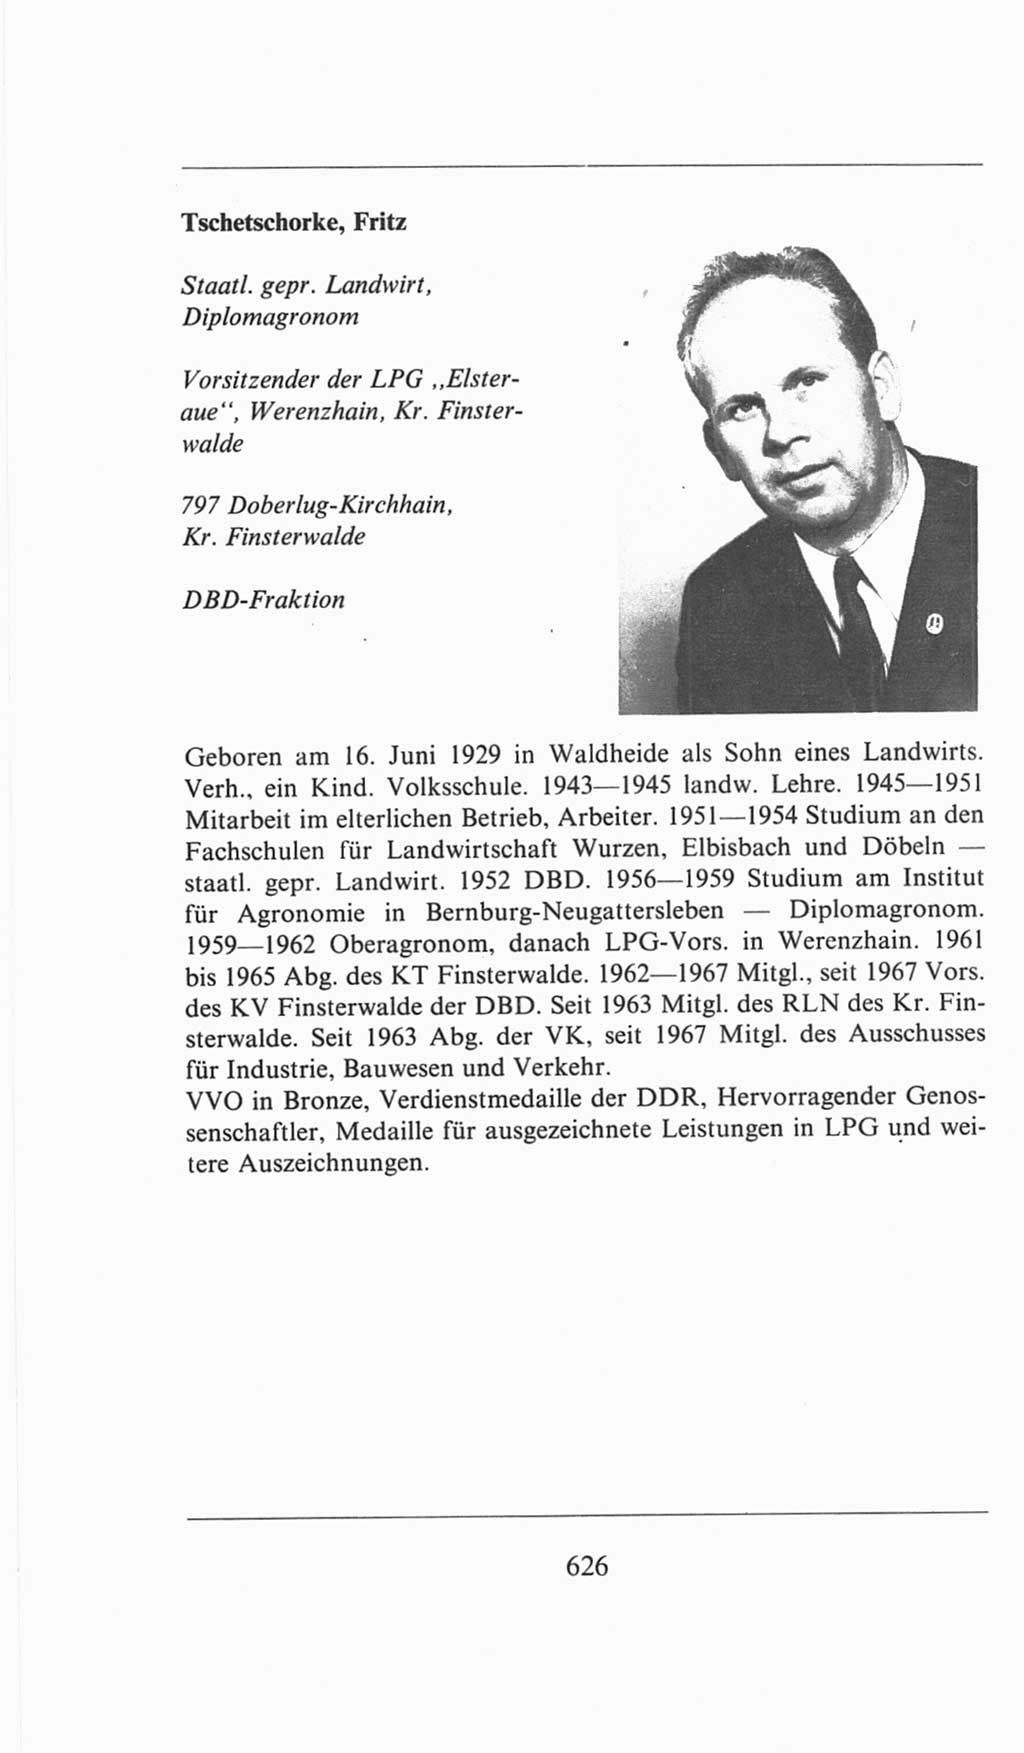 Volkskammer (VK) der Deutschen Demokratischen Republik (DDR), 6. Wahlperiode 1971-1976, Seite 626 (VK. DDR 6. WP. 1971-1976, S. 626)